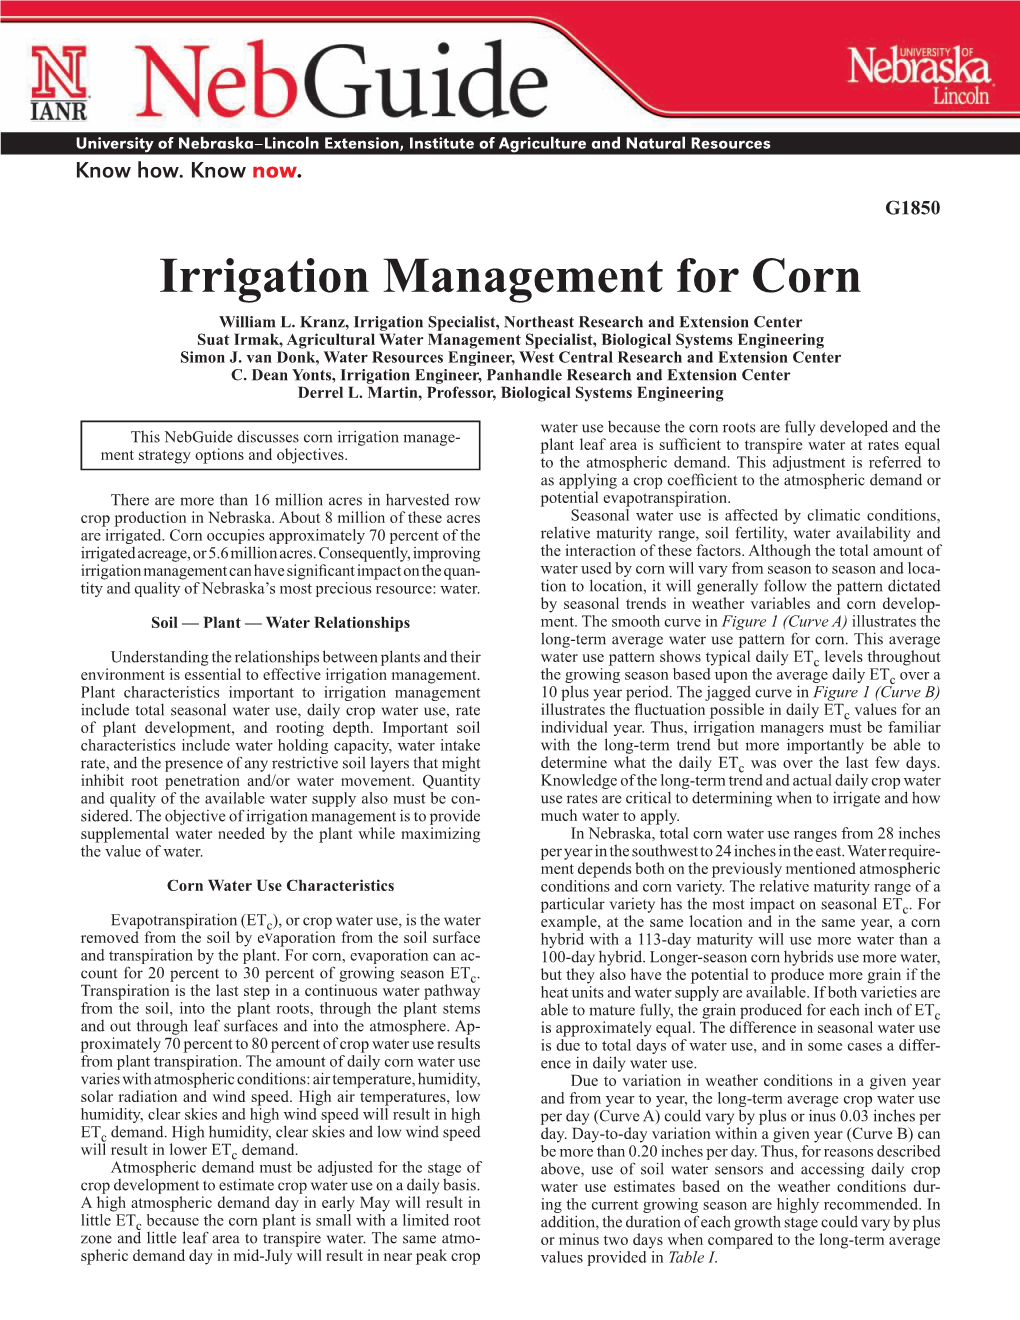 Irrigation Management for Corn William L